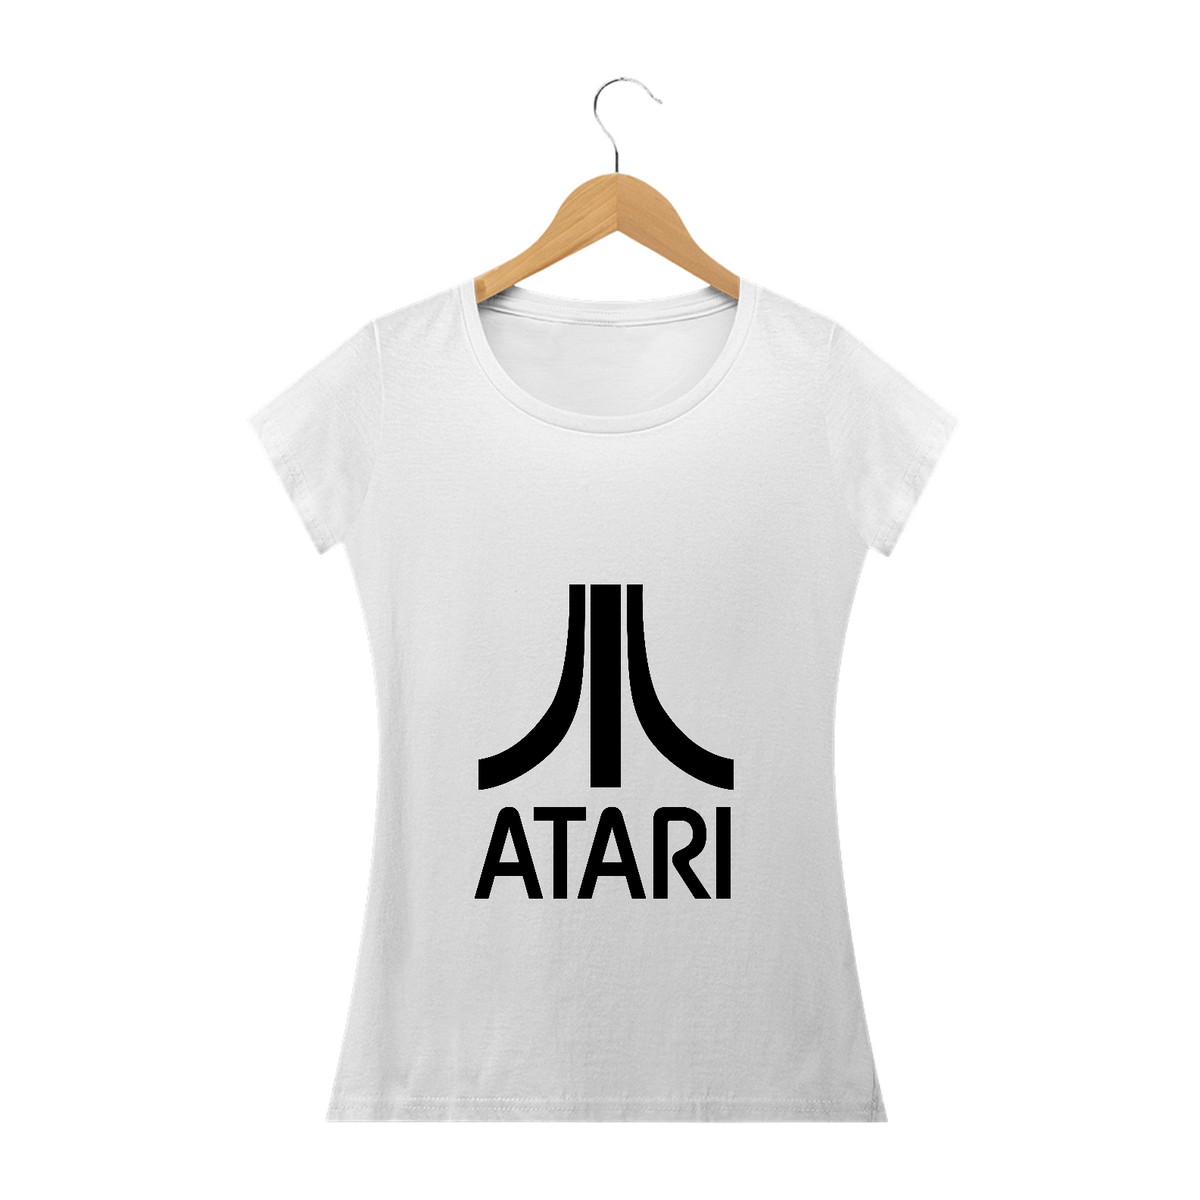 Nome do produto: Baby Long Atari